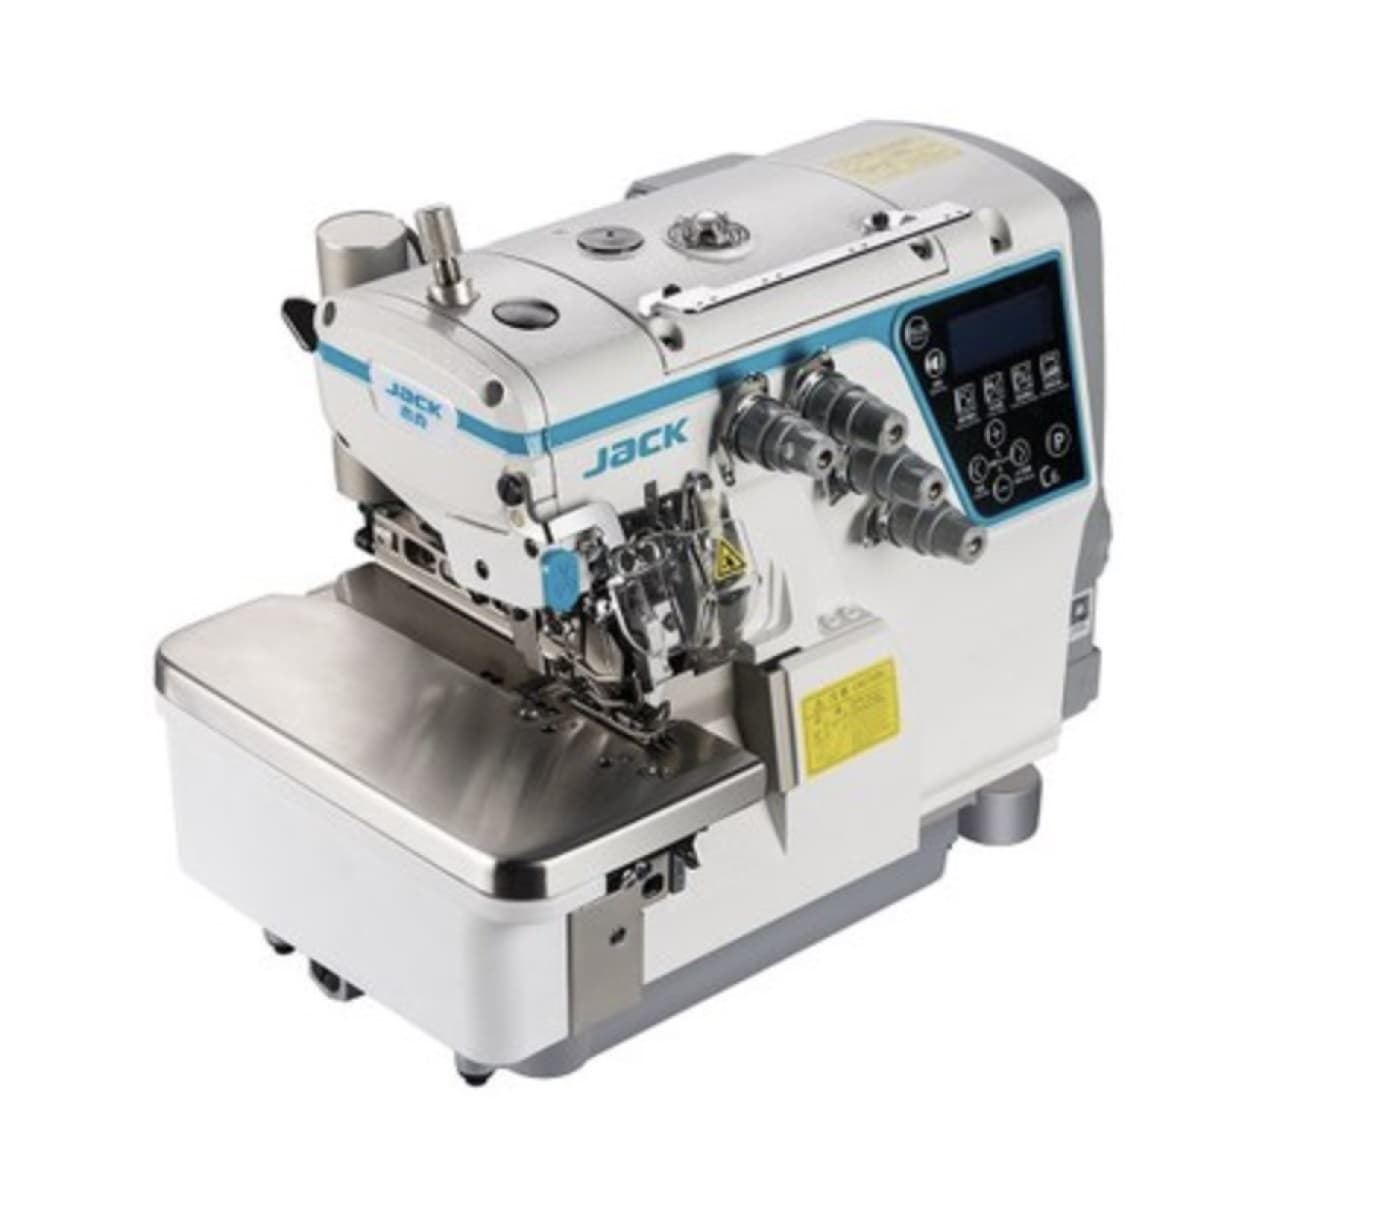 JACK C6-4 M03/333 AUTOMÁTICA (4 HILOS) - Máquina de coser industrial remalladora - Imagen 5